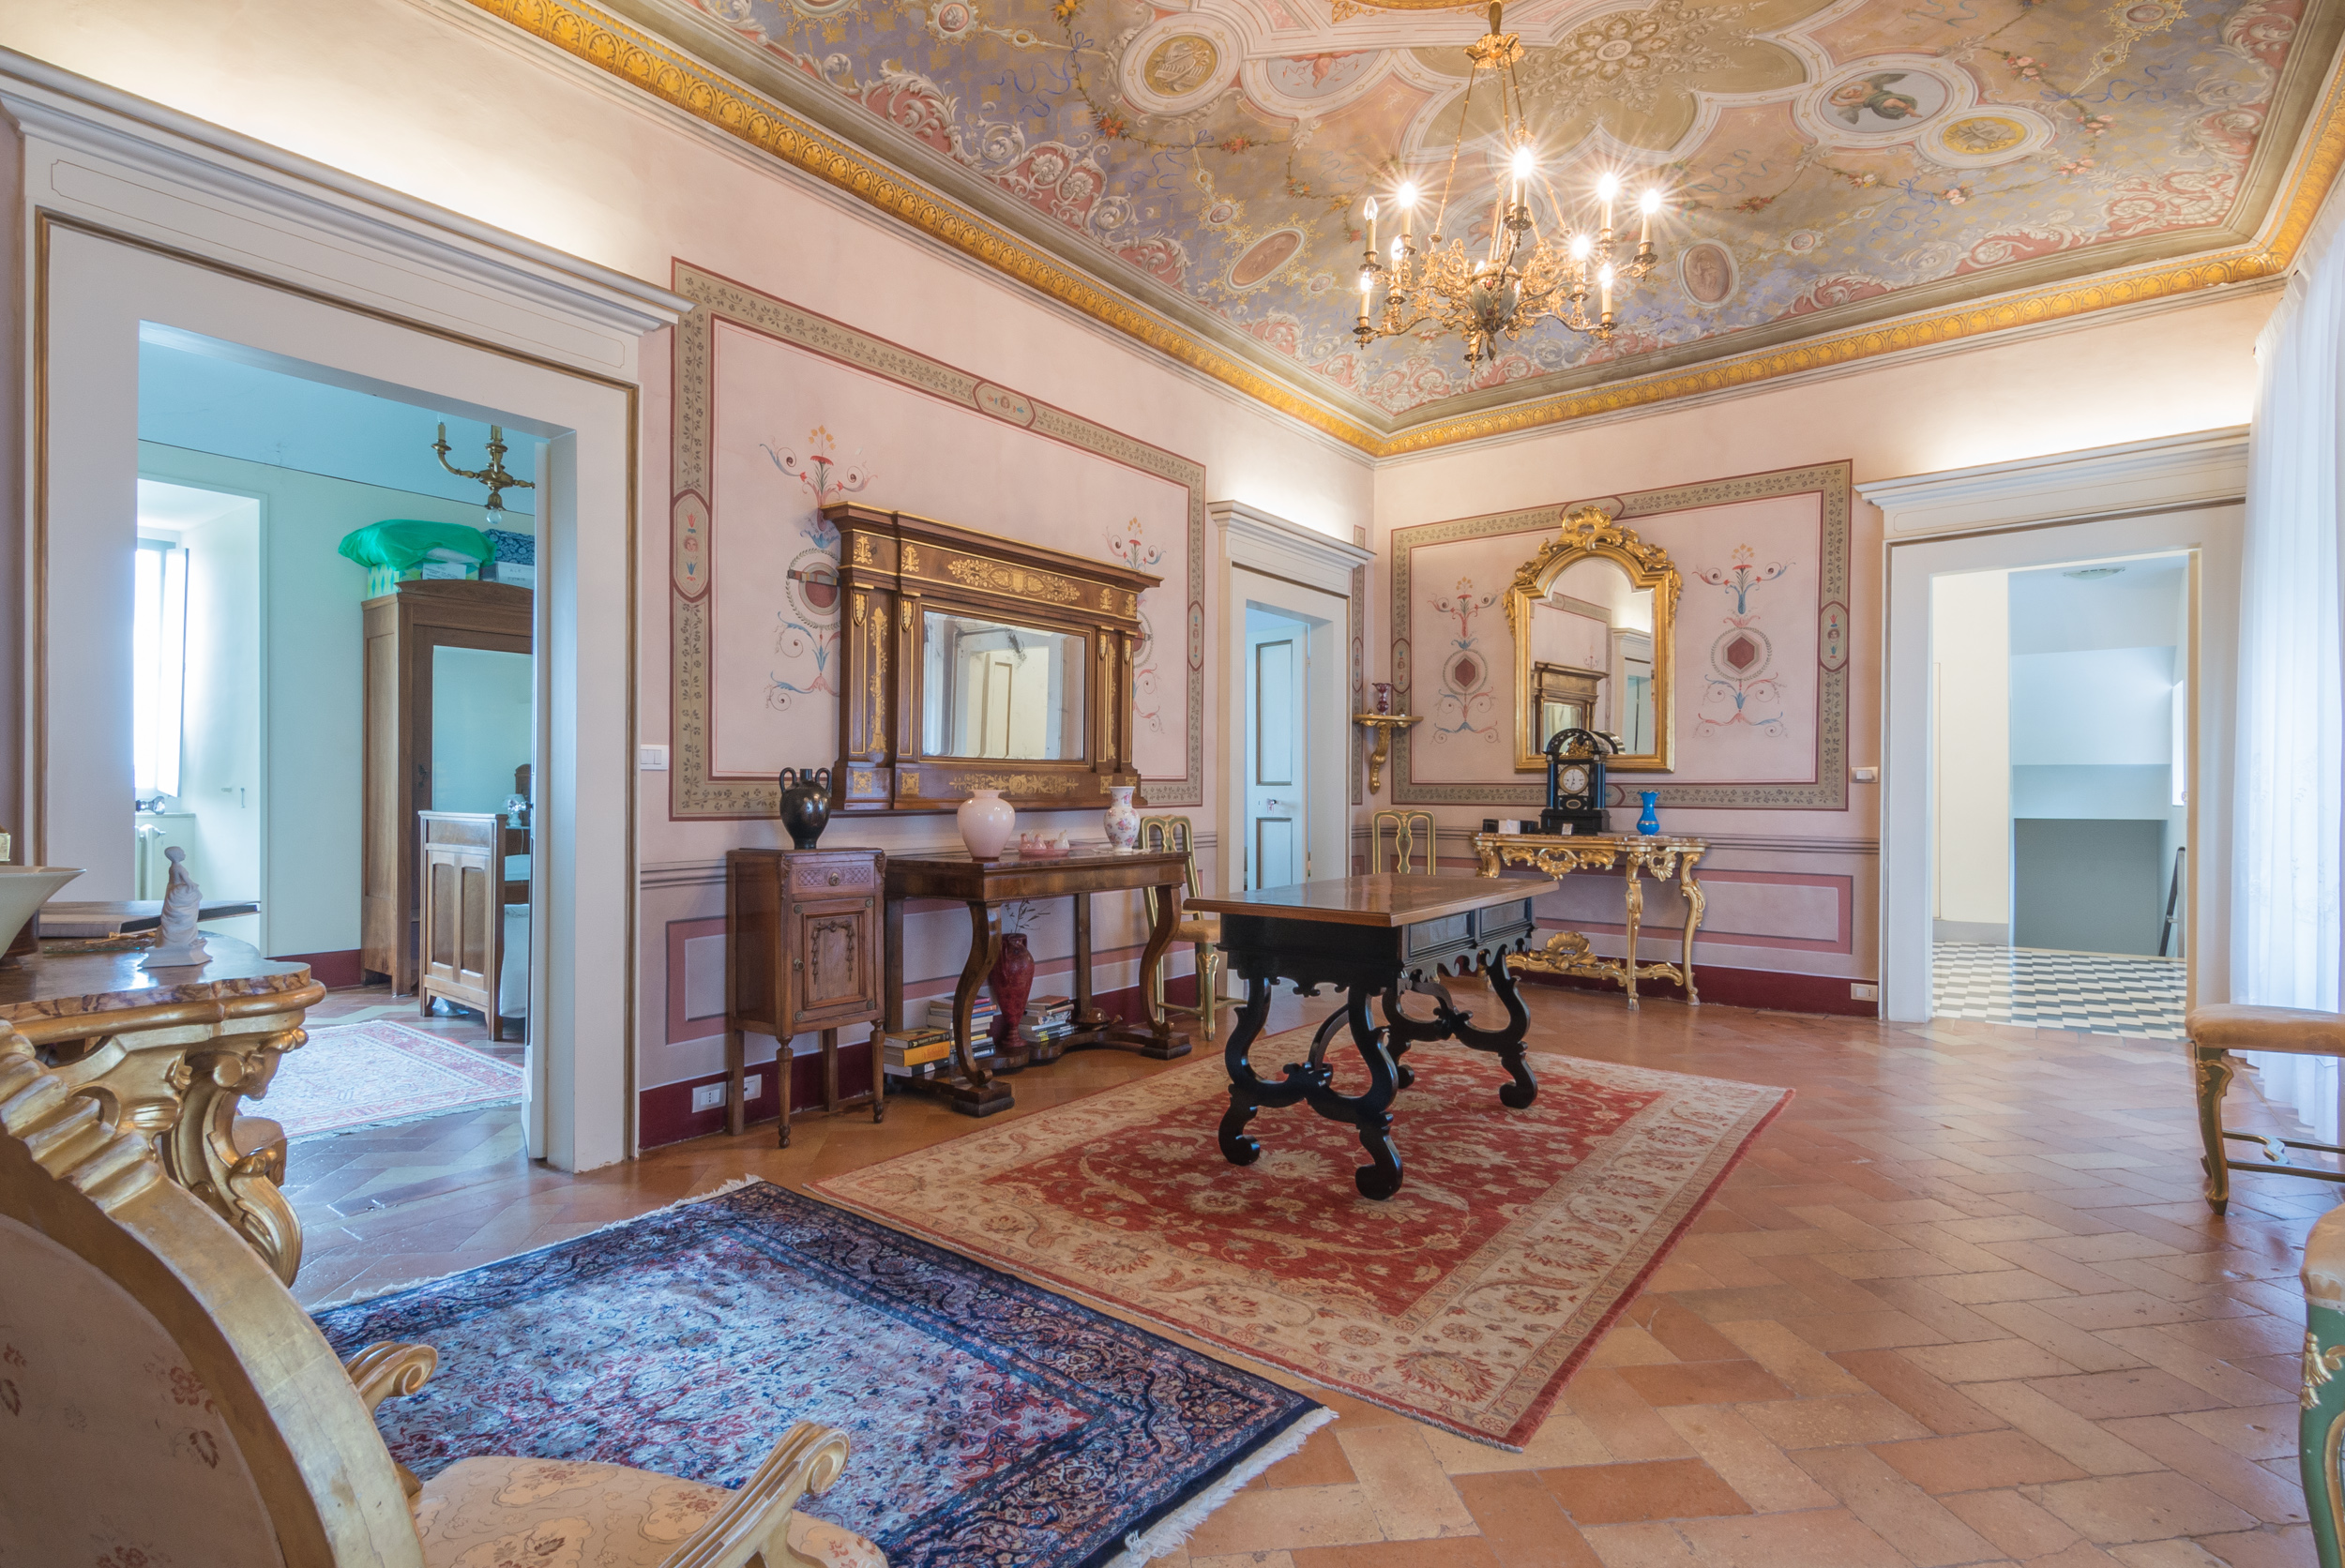 L'Agenzia Immobiliare Puzielli propone prestigioso piano nobile con giardino in vendita nel centro storico di Fermo